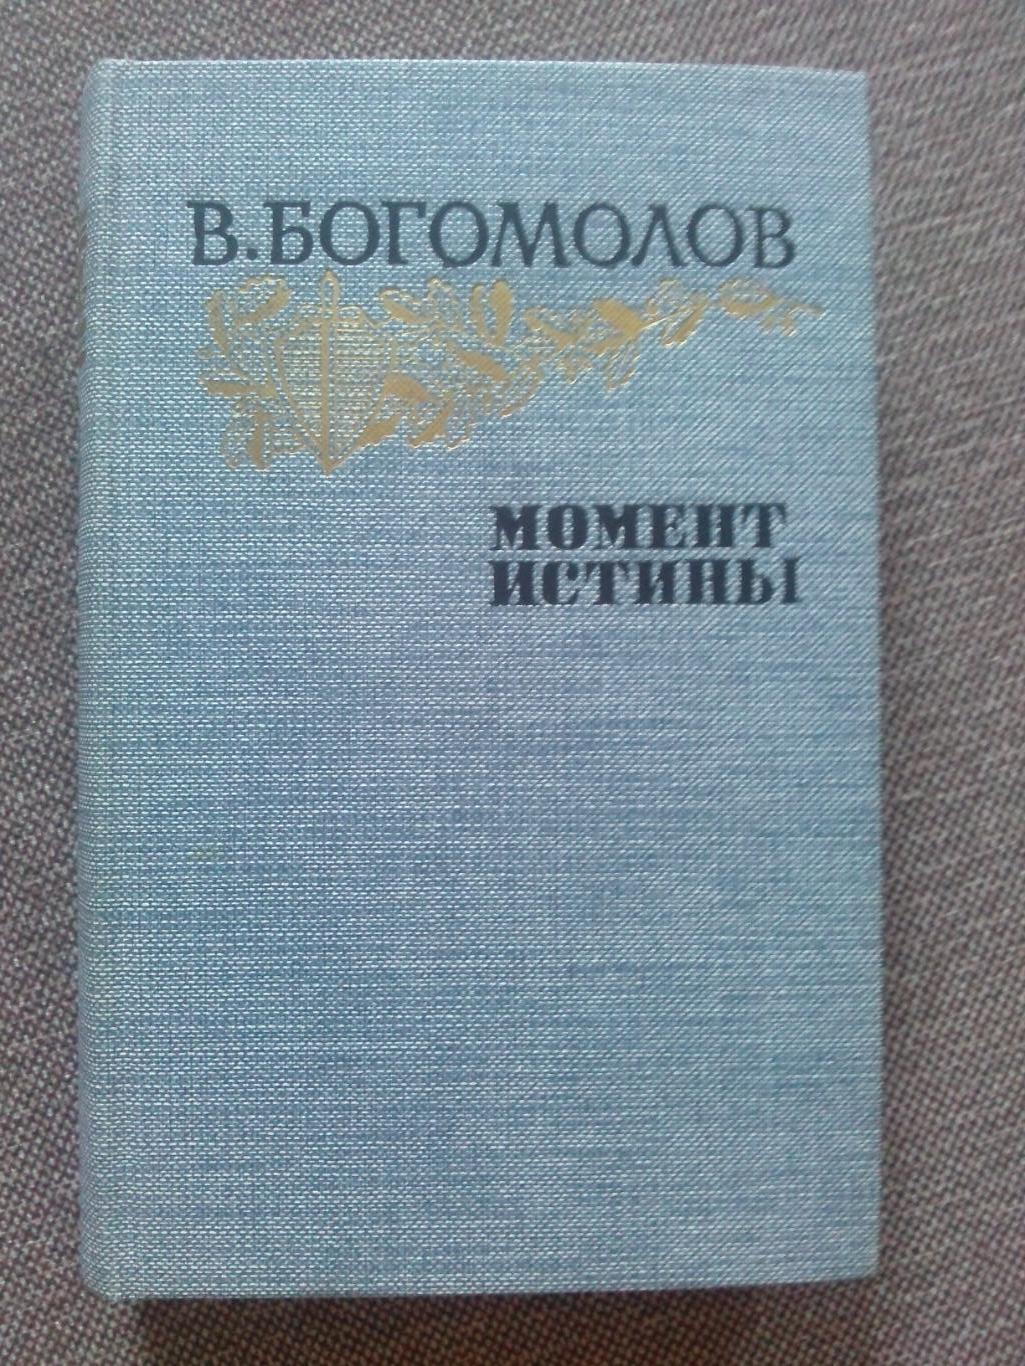 В. Богомолов - Момент истины (в августе 44 - го) 1985 г. (Военные приключения)